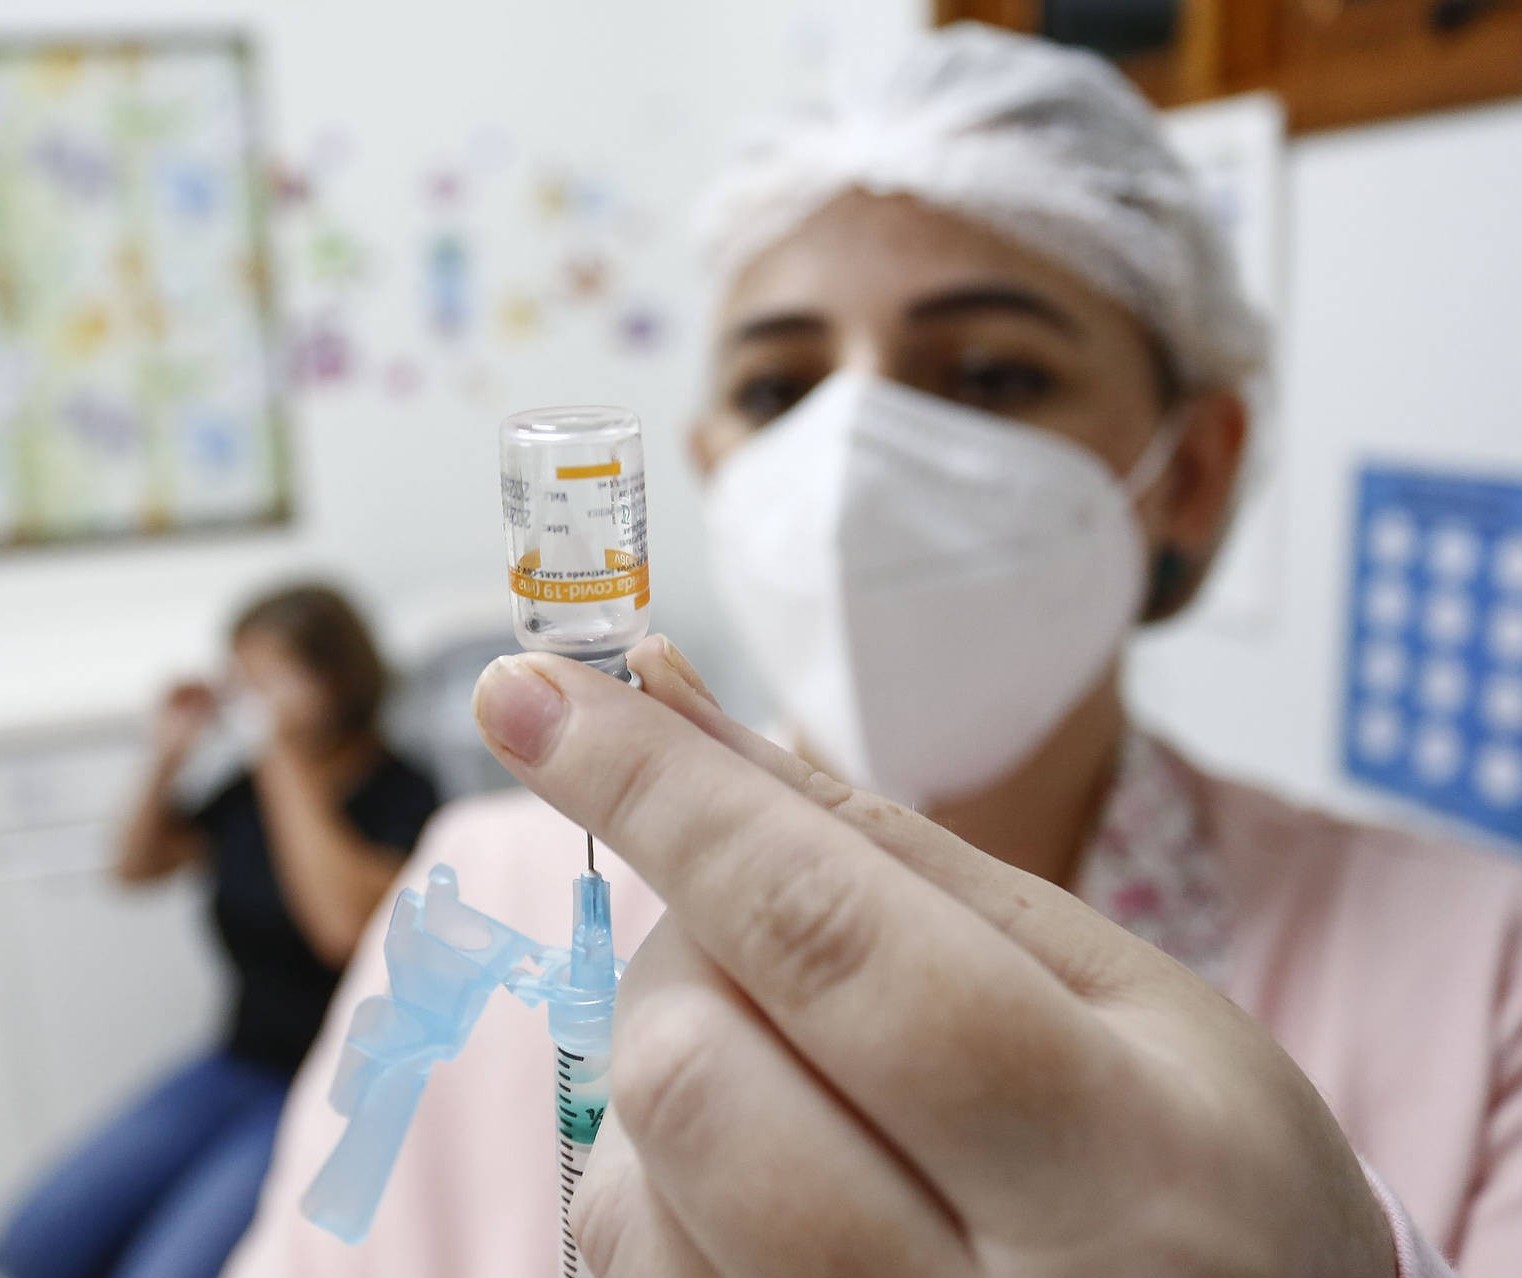 Consórcio deve tentar laboratórios estrangeiros para compra de vacinas, diz prefeito